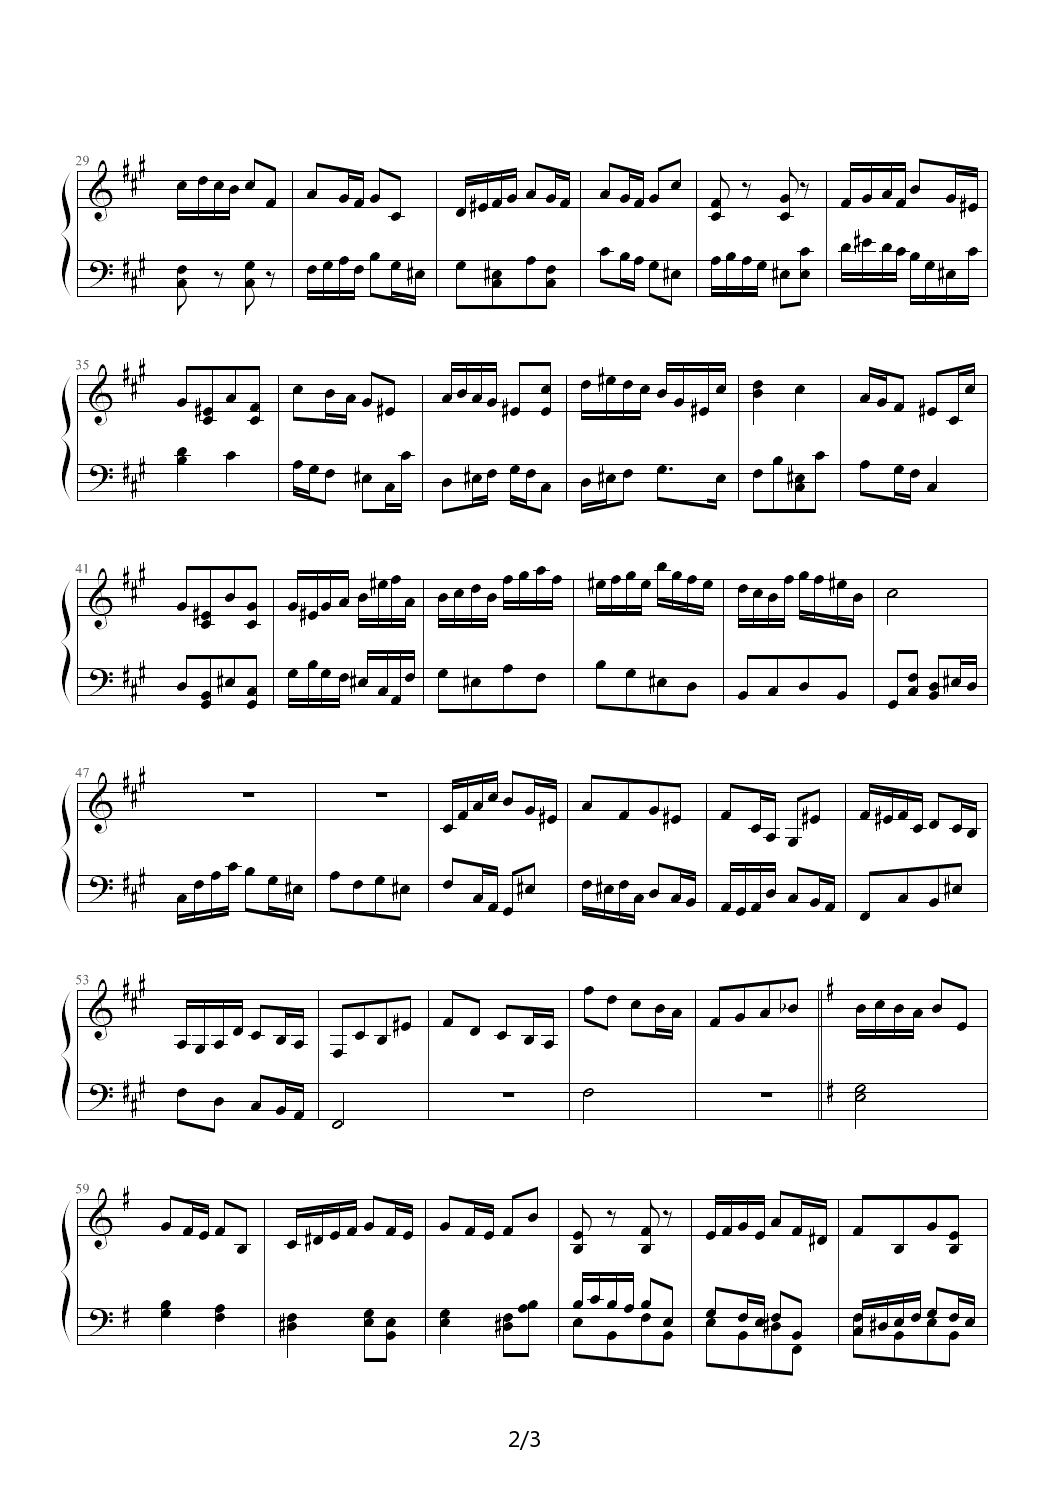 Fugue in E minor钢琴谱|Fugue in E minor最新钢琴谱|Fugue in E minor钢琴谱下载